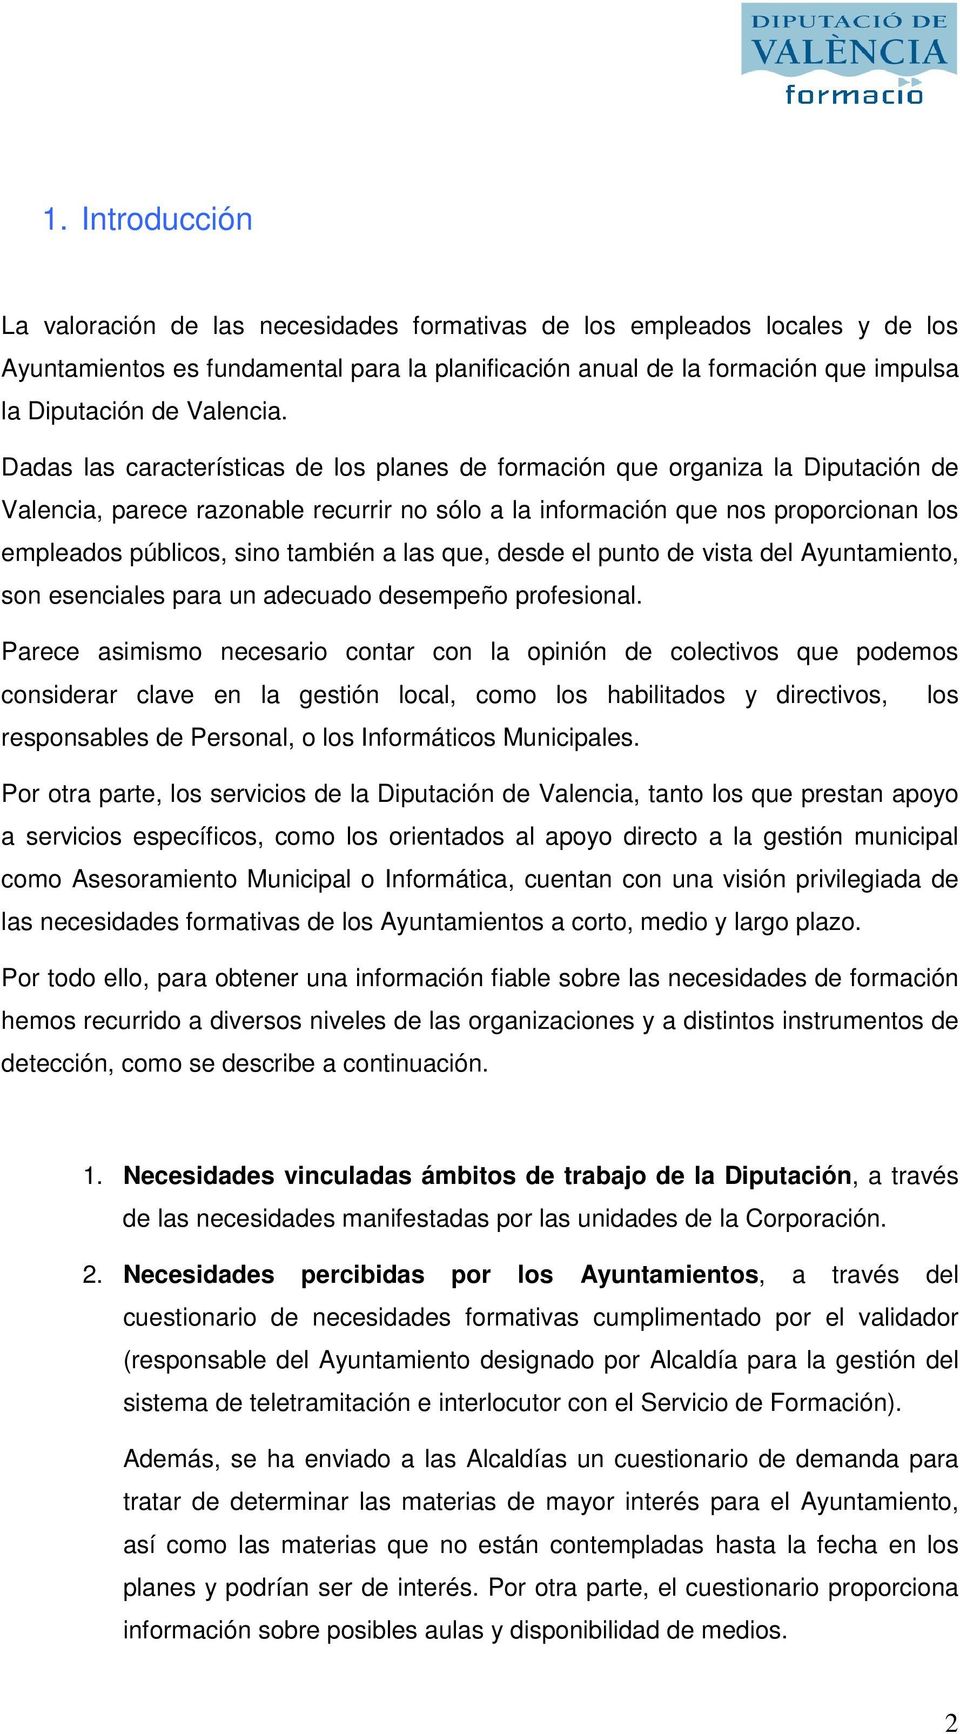 Dadas las características de los planes de formación que organiza la Diputación de Valencia, parece razonable recurrir no sólo a la información que nos proporcionan los empleados públicos, sino